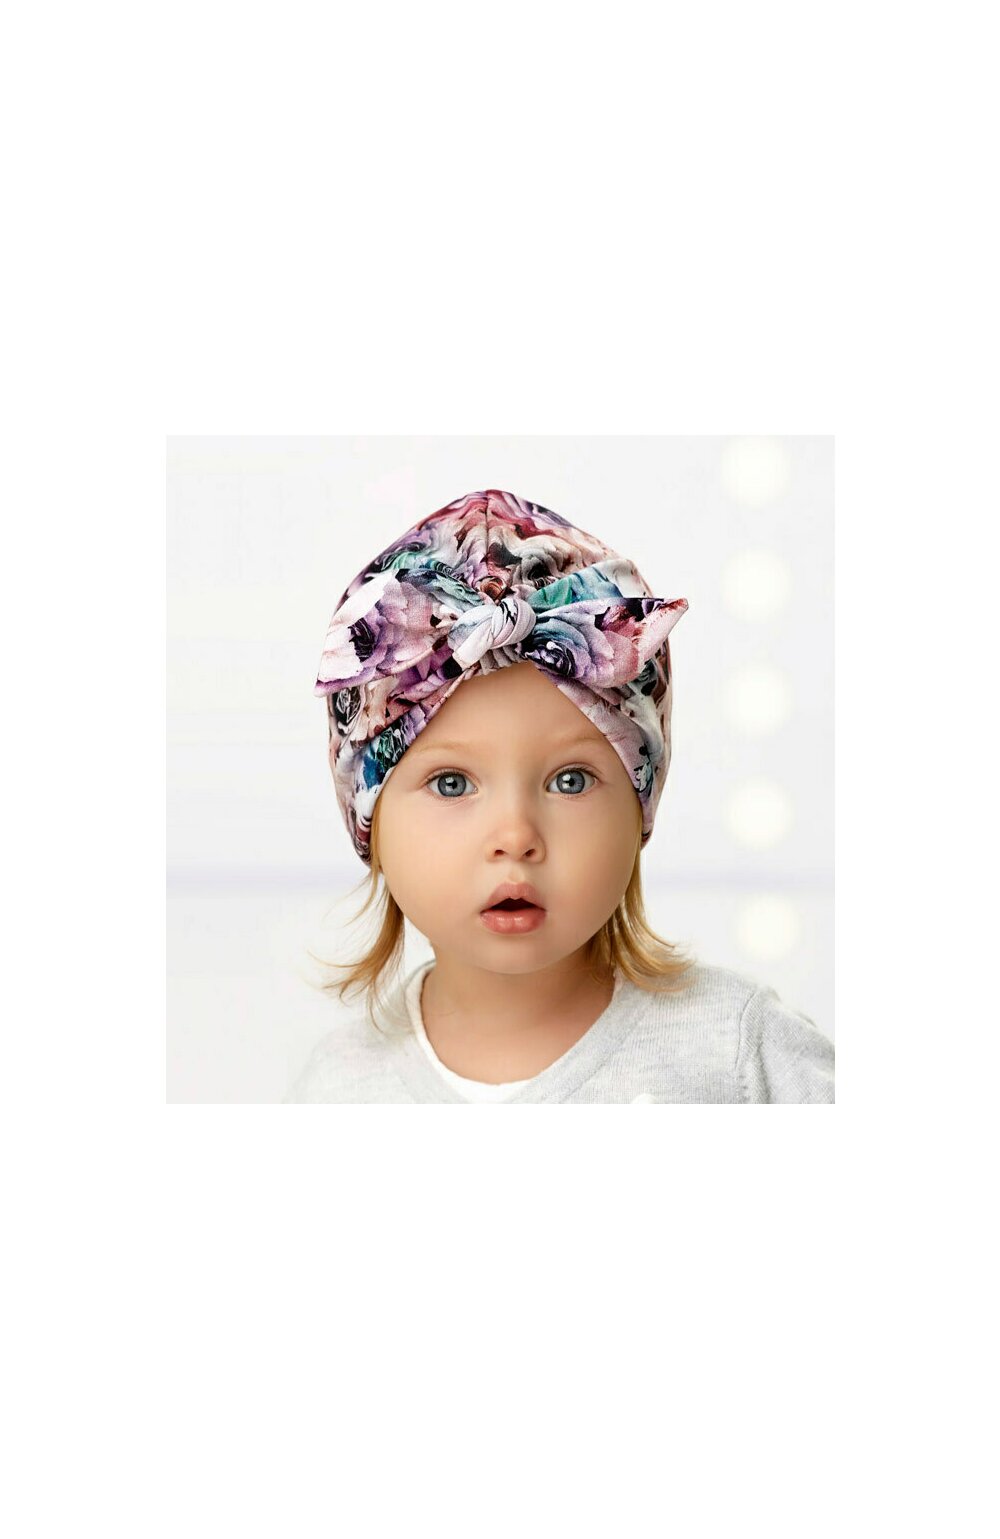 Caciula dublata din bumbac pentru fetite 6 luni-7 ani - AJS 44-034 imprimeu floral